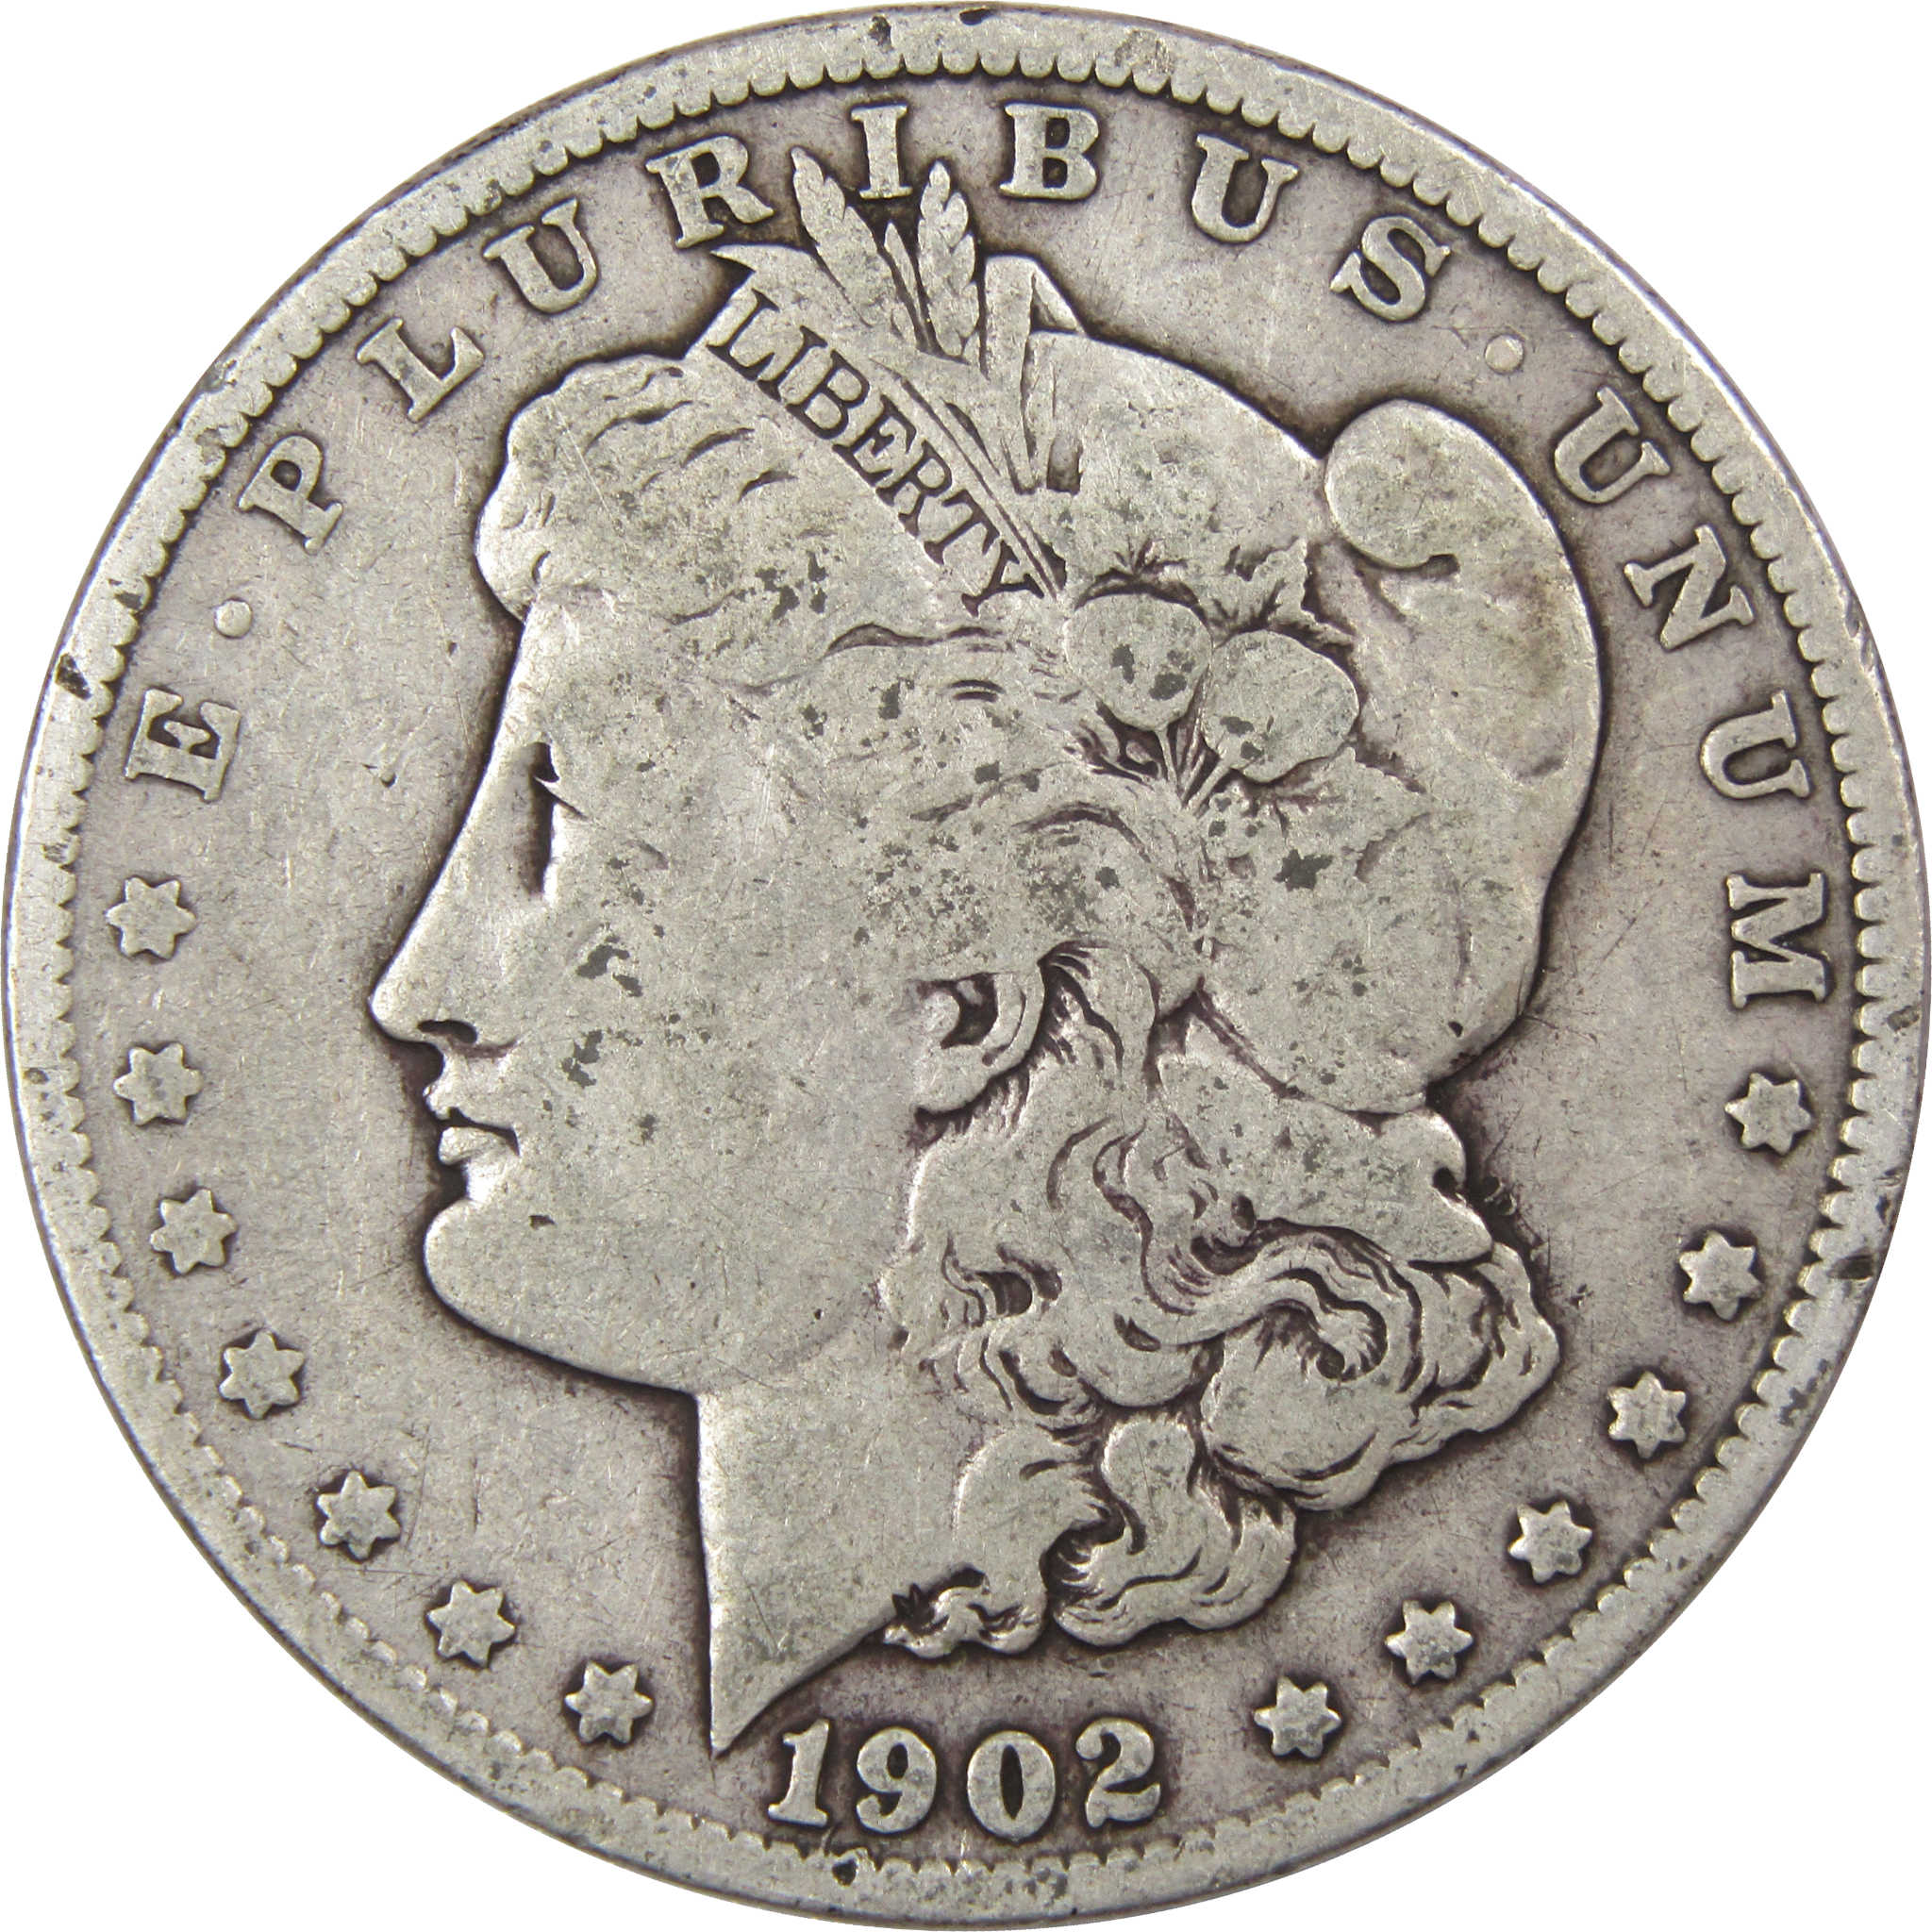 1902 O Morgan Dollar VG Very Good 90% Silver US Coin SKU:I1844 - Morgan coin - Morgan silver dollar - Morgan silver dollar for sale - Profile Coins &amp; Collectibles